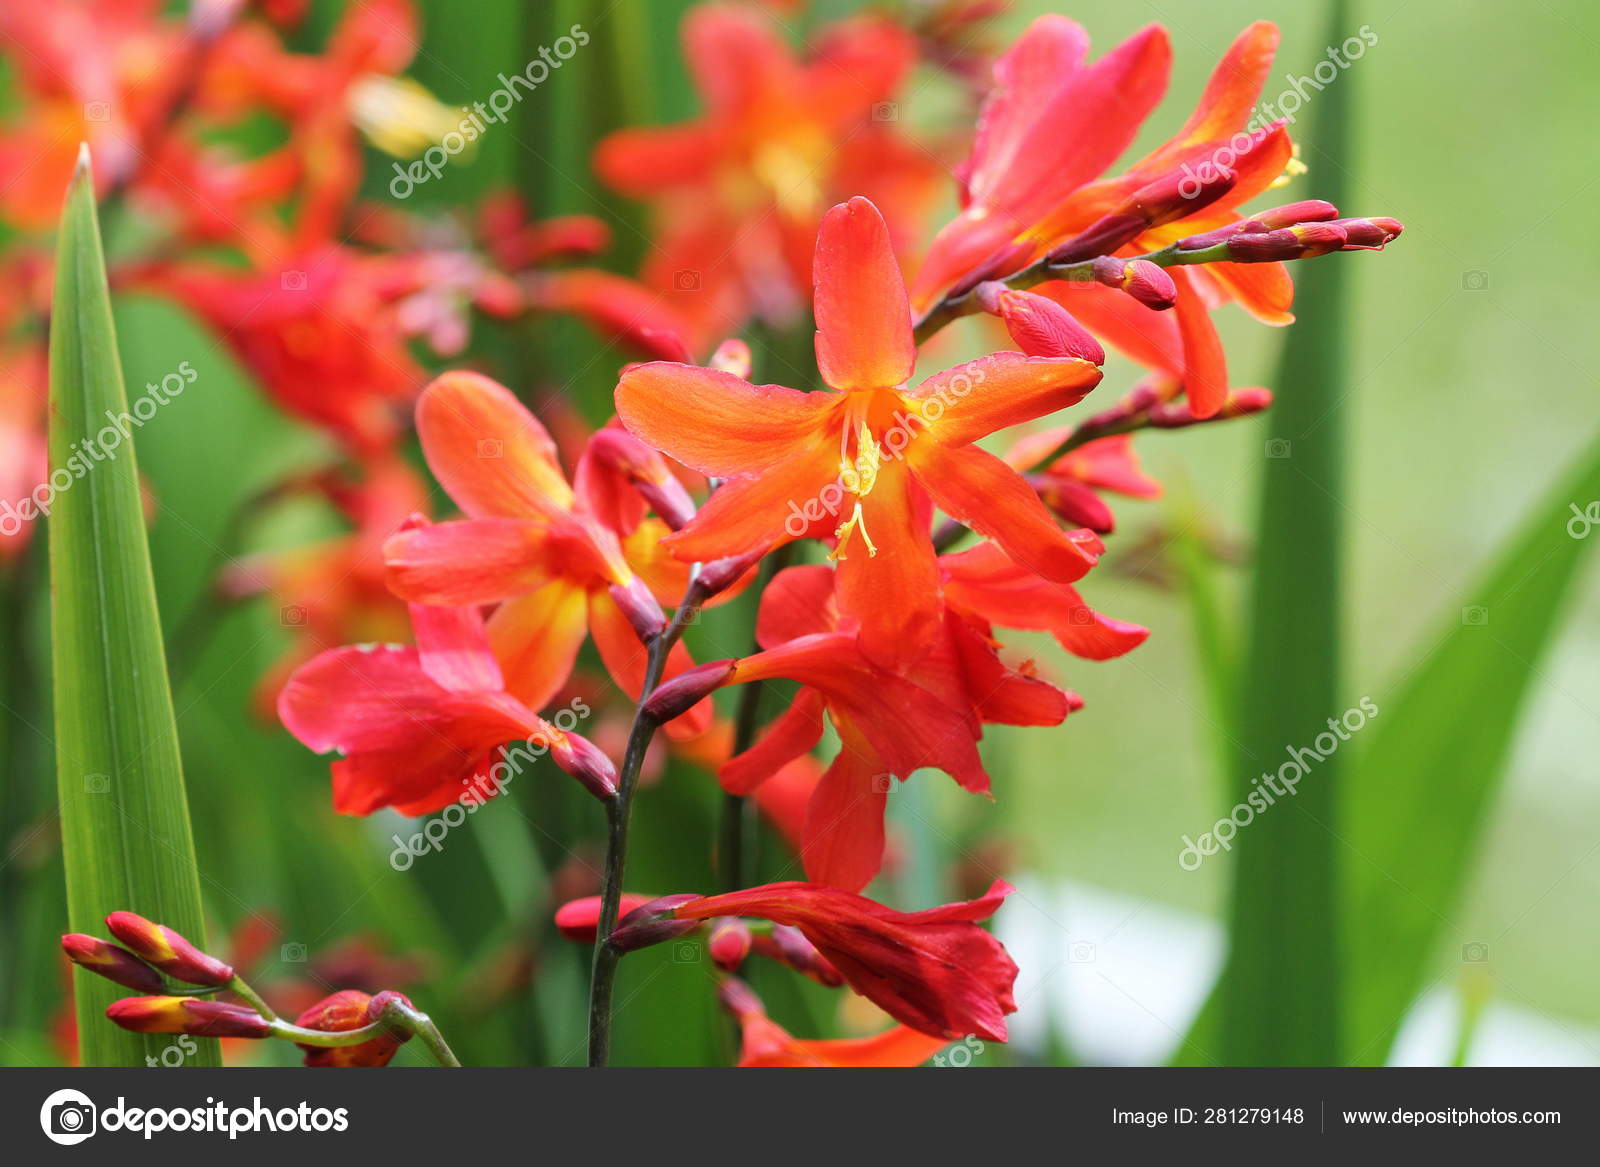 crocosmia or montbretia plant in bloom with orange flowers stock